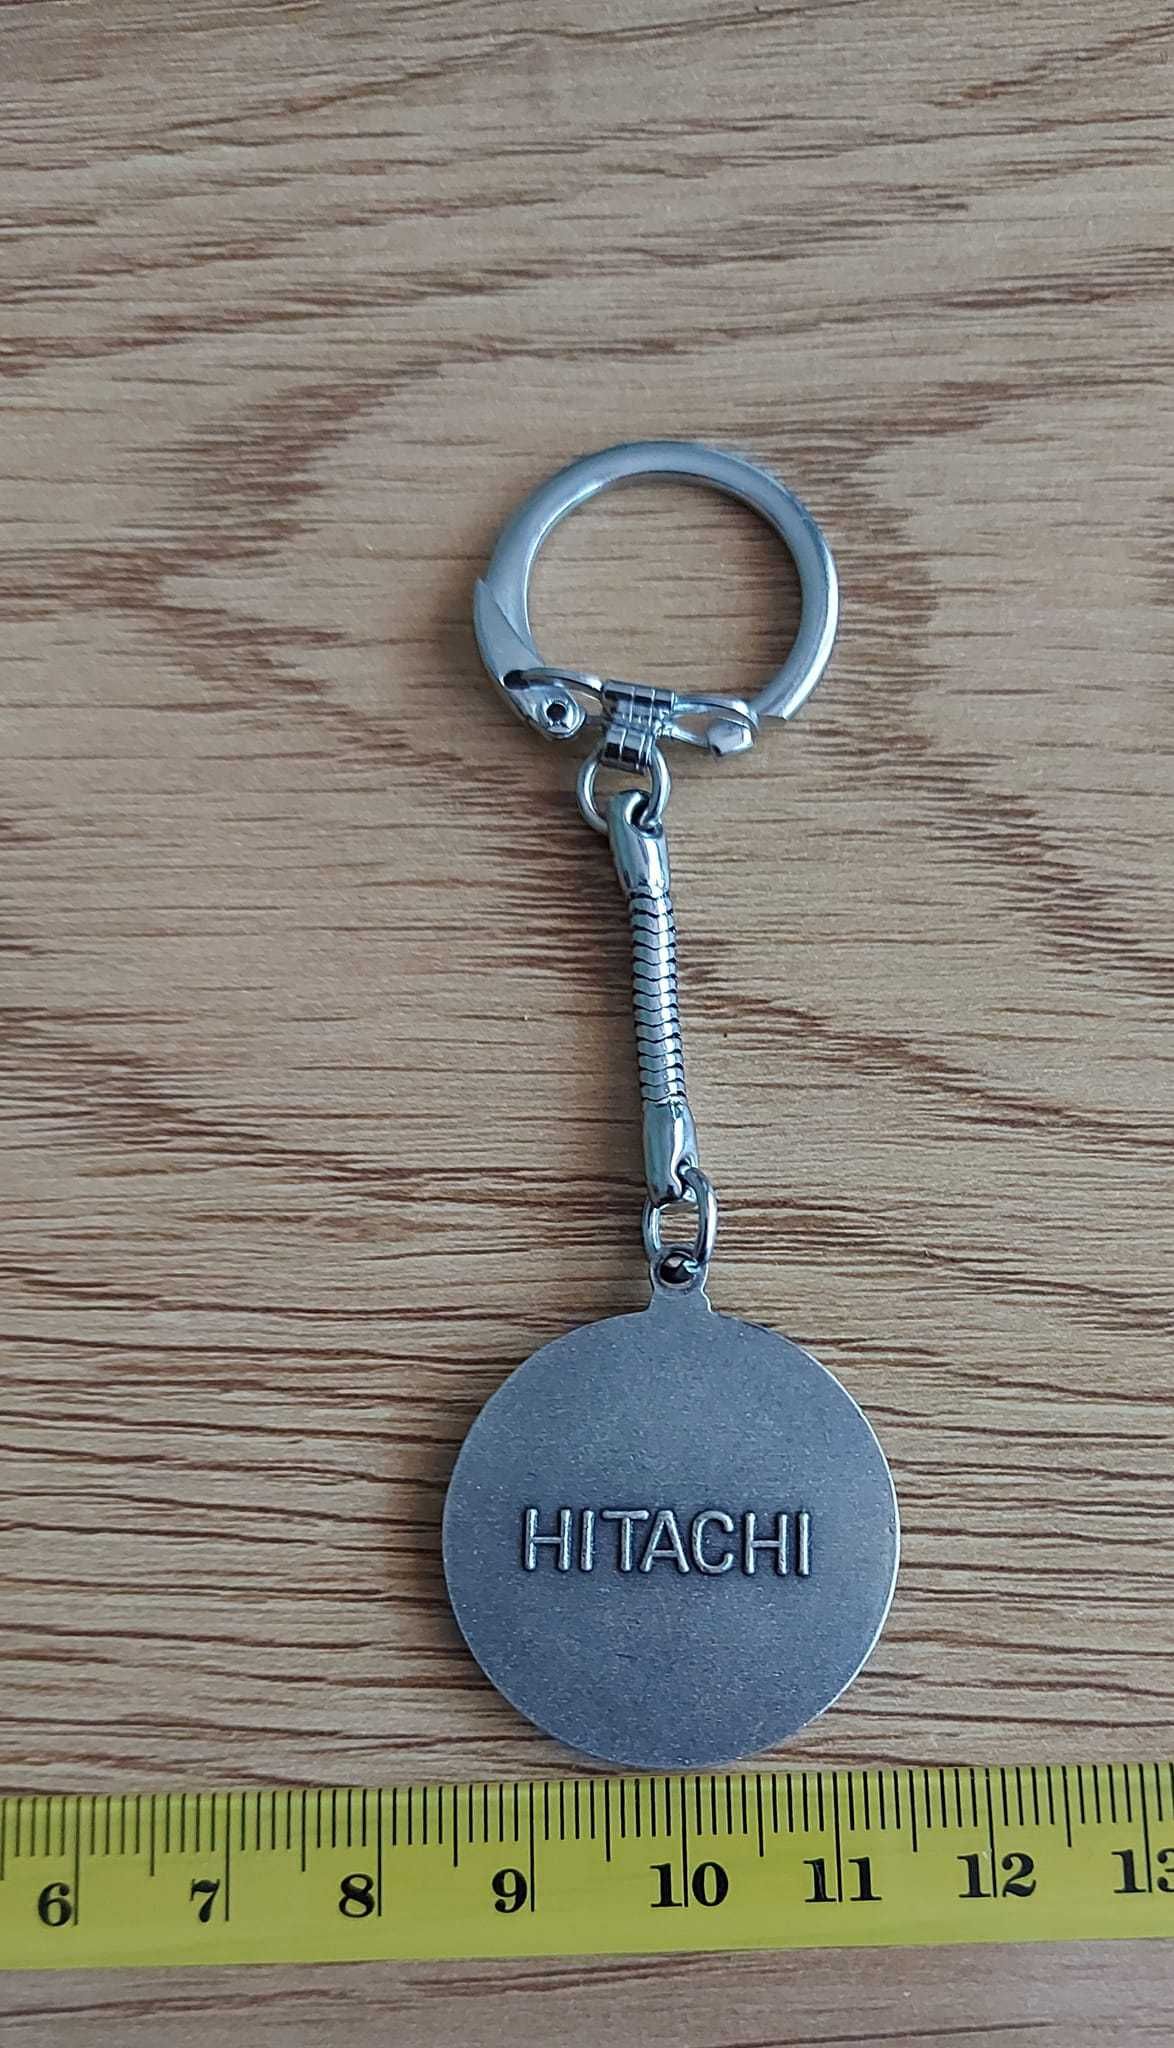 Ключодържател "Hitachi". Цена: 8лв. Публикувано и на други места